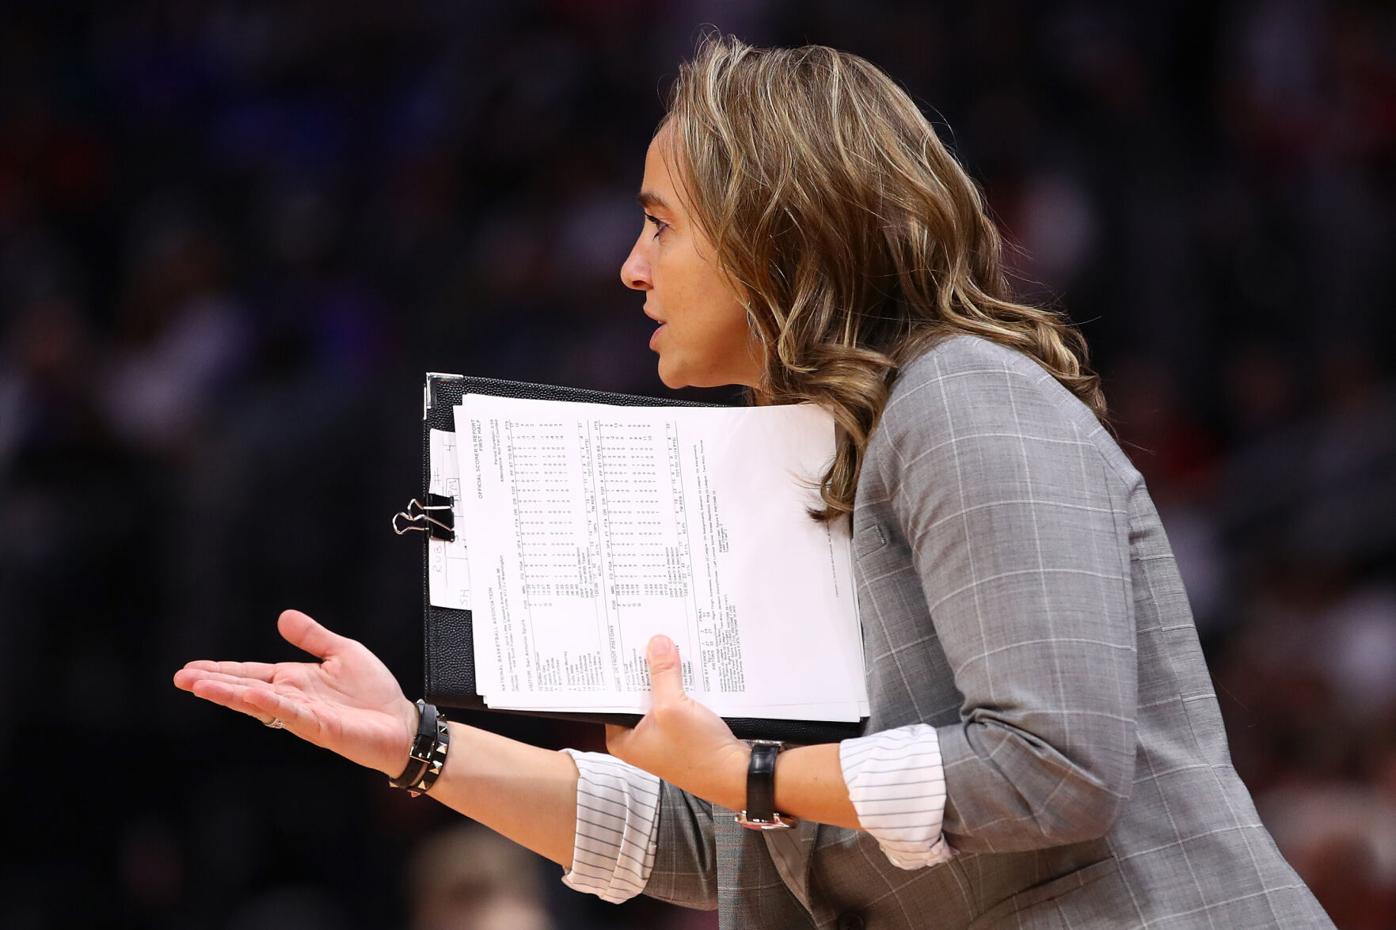 Aces raise Spurs' Hammon's WNBA jersey